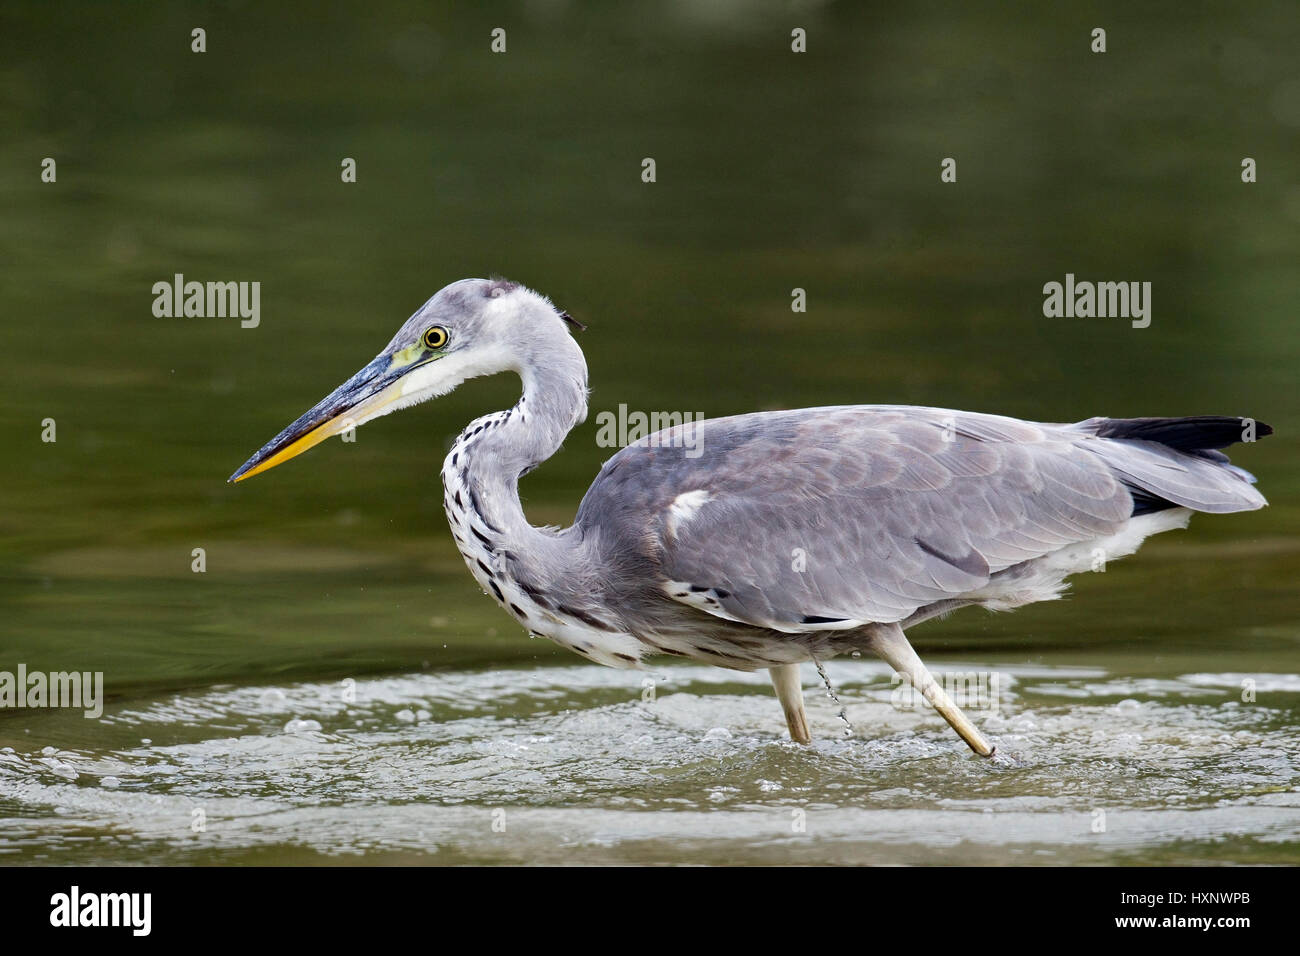 Grey heron on food search, Graureiher auf Nahrungssuche Stock Photo